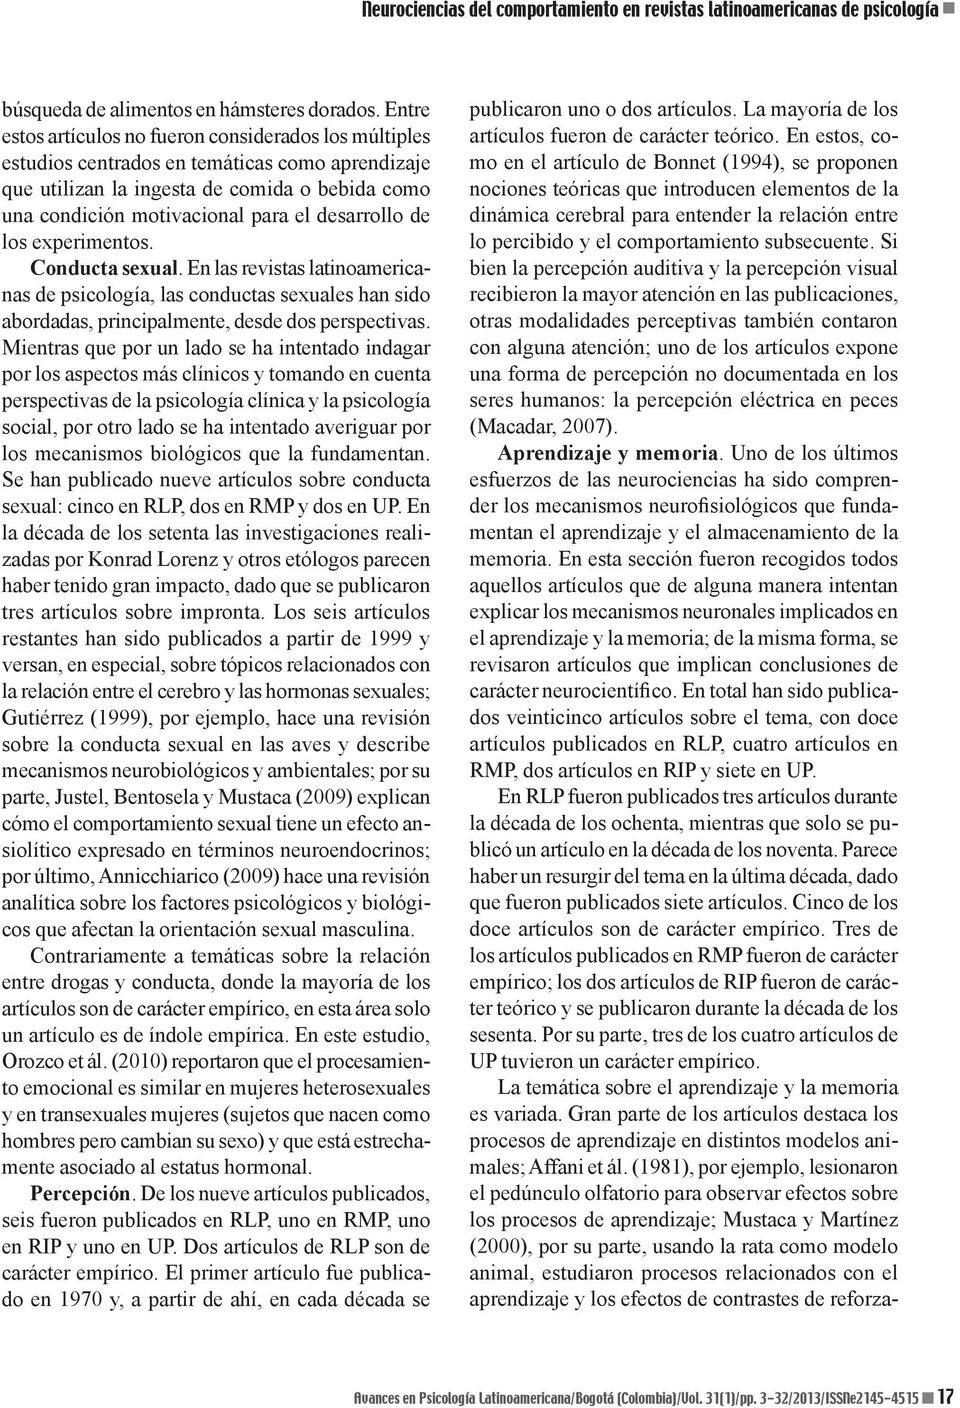 desarrollo de los experimentos. Conducta sexual. En las revistas latinoamericanas de psicología, las conductas sexuales han sido abordadas, principalmente, desde dos perspectivas.